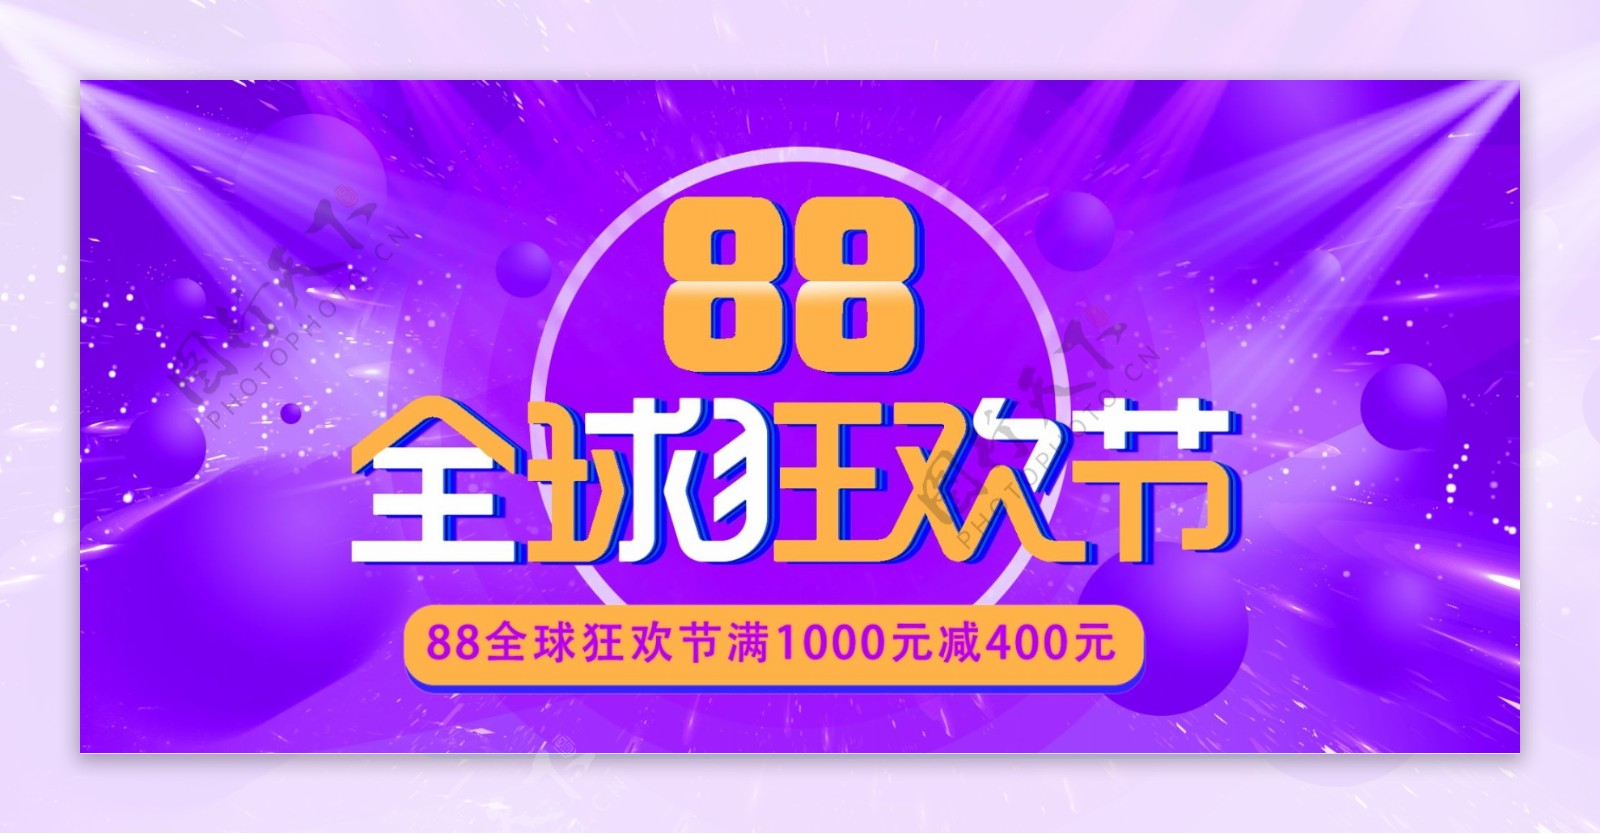 电商紫色炫酷渐变88全球狂欢节促销海报